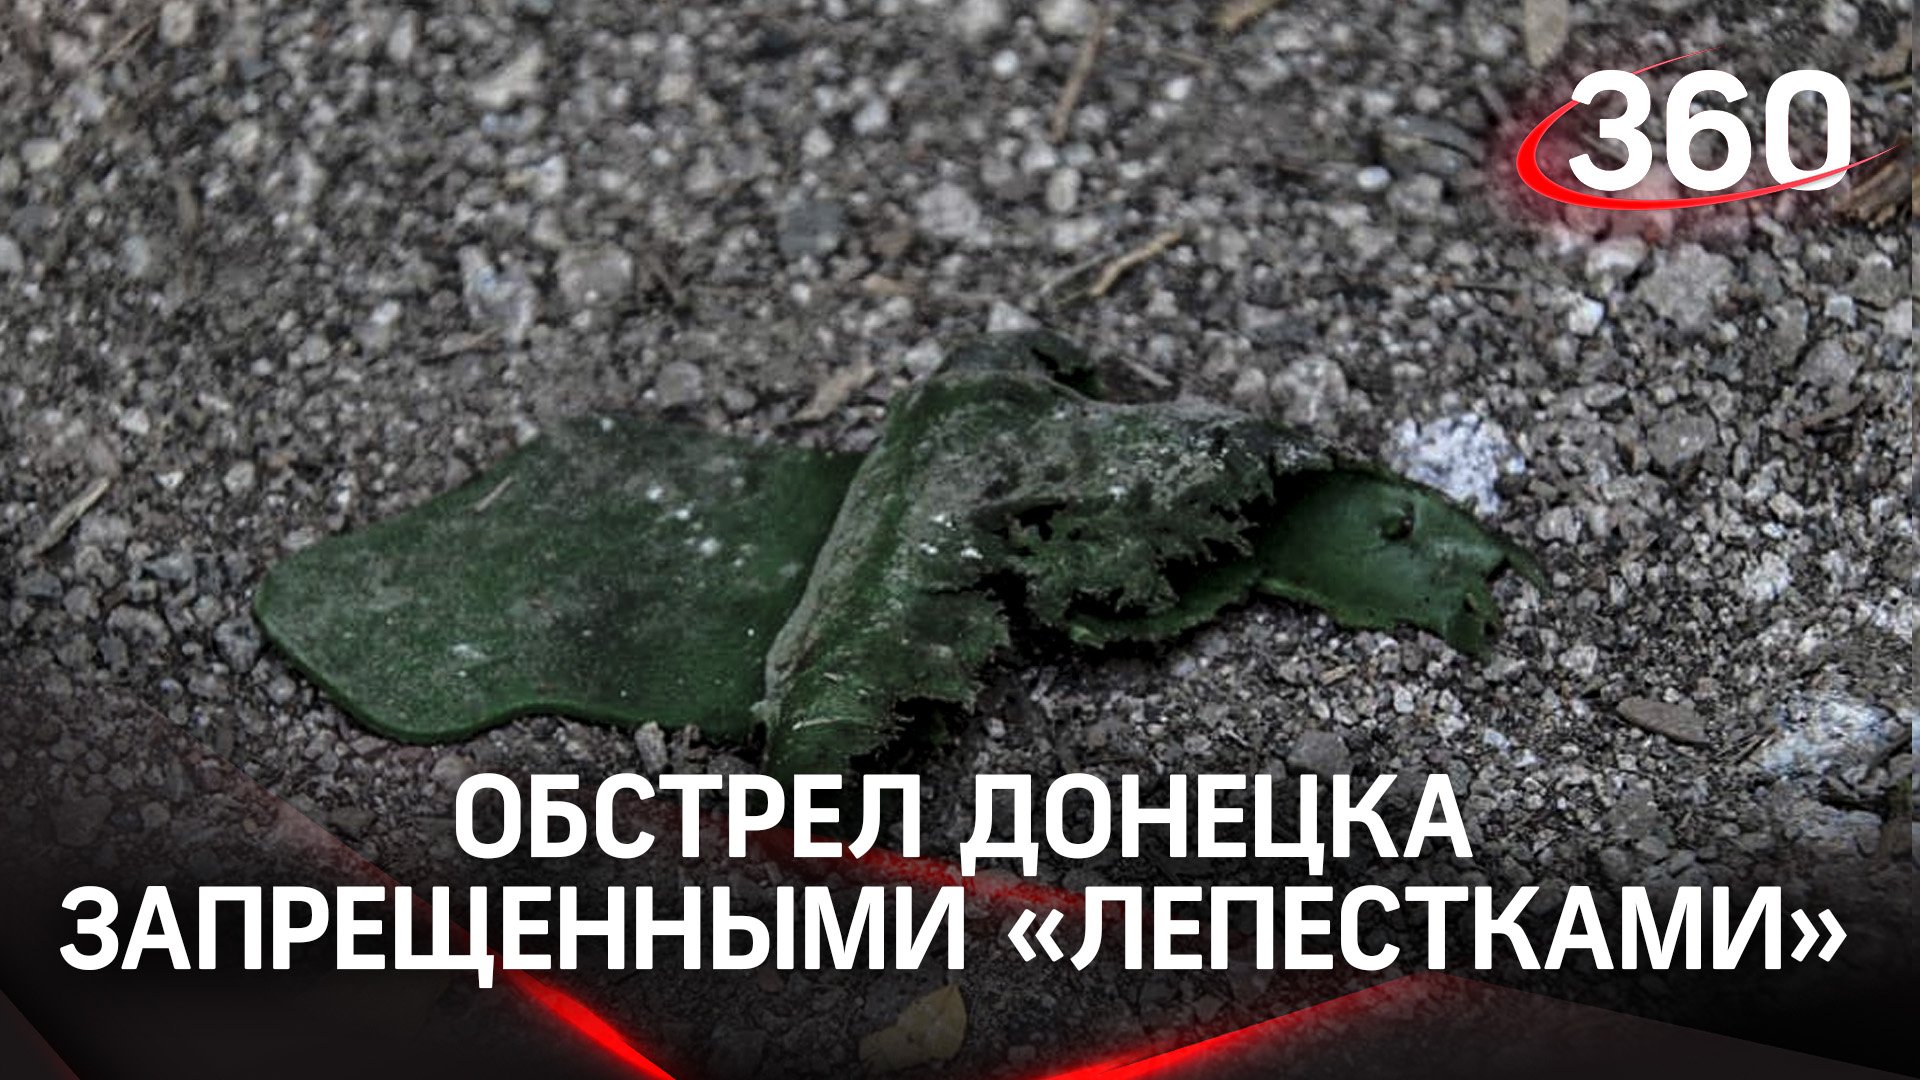 ВСУ нанесли ракетный удар по Донецку, рассыпав запрещенные противопехотные мины «Лепесток»